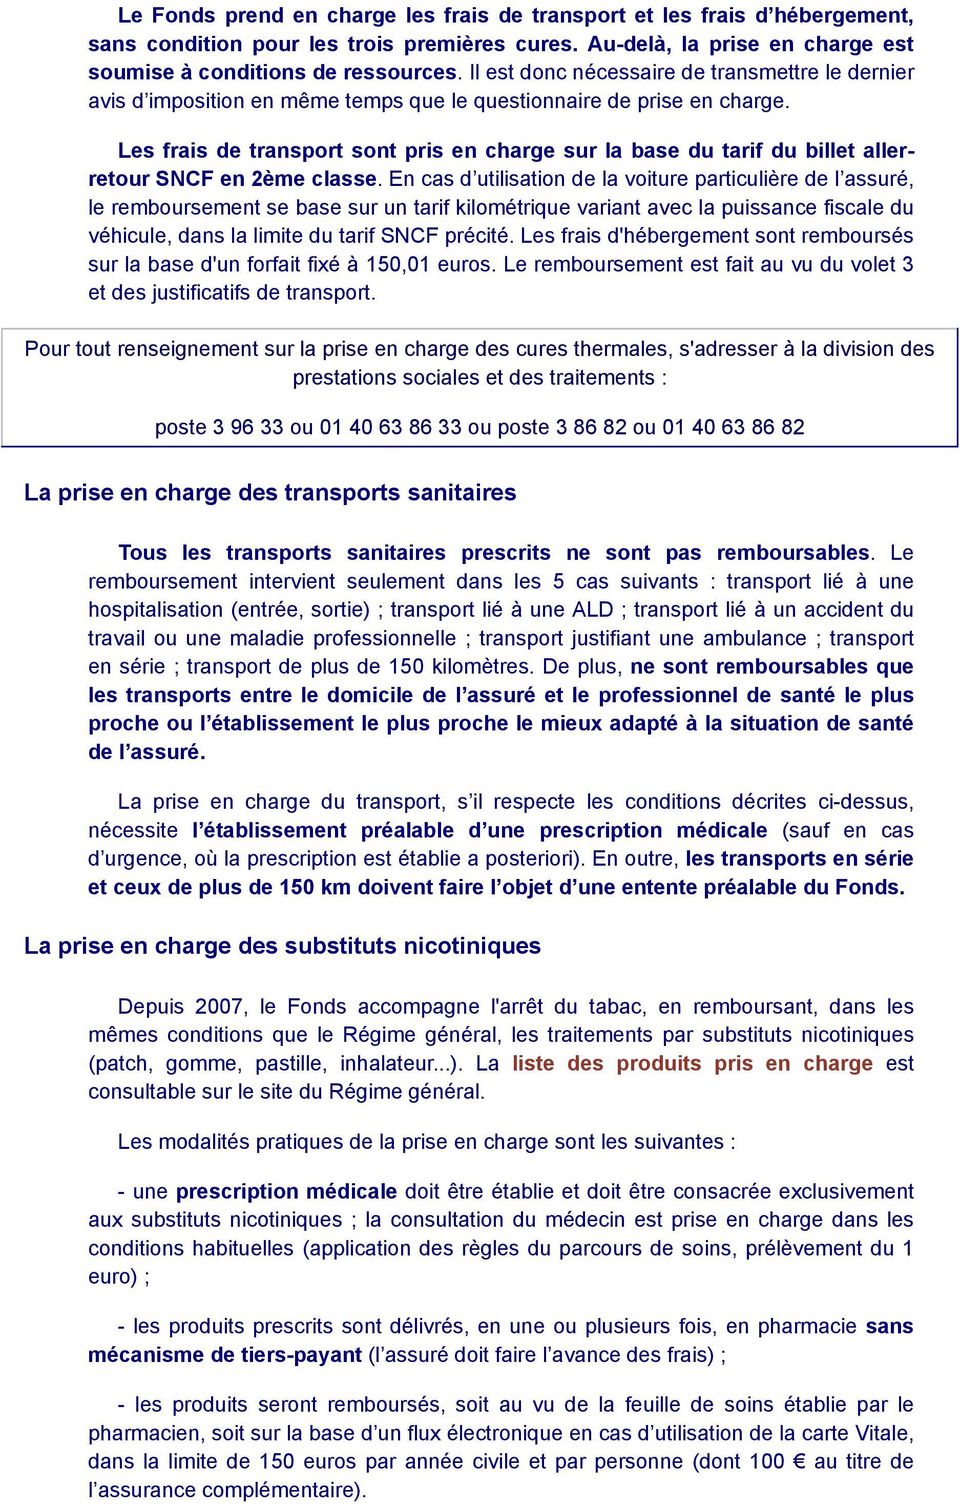 Les frais de transport sont pris en charge sur la base du tarif du billet allerretour SNCF en 2ème classe.